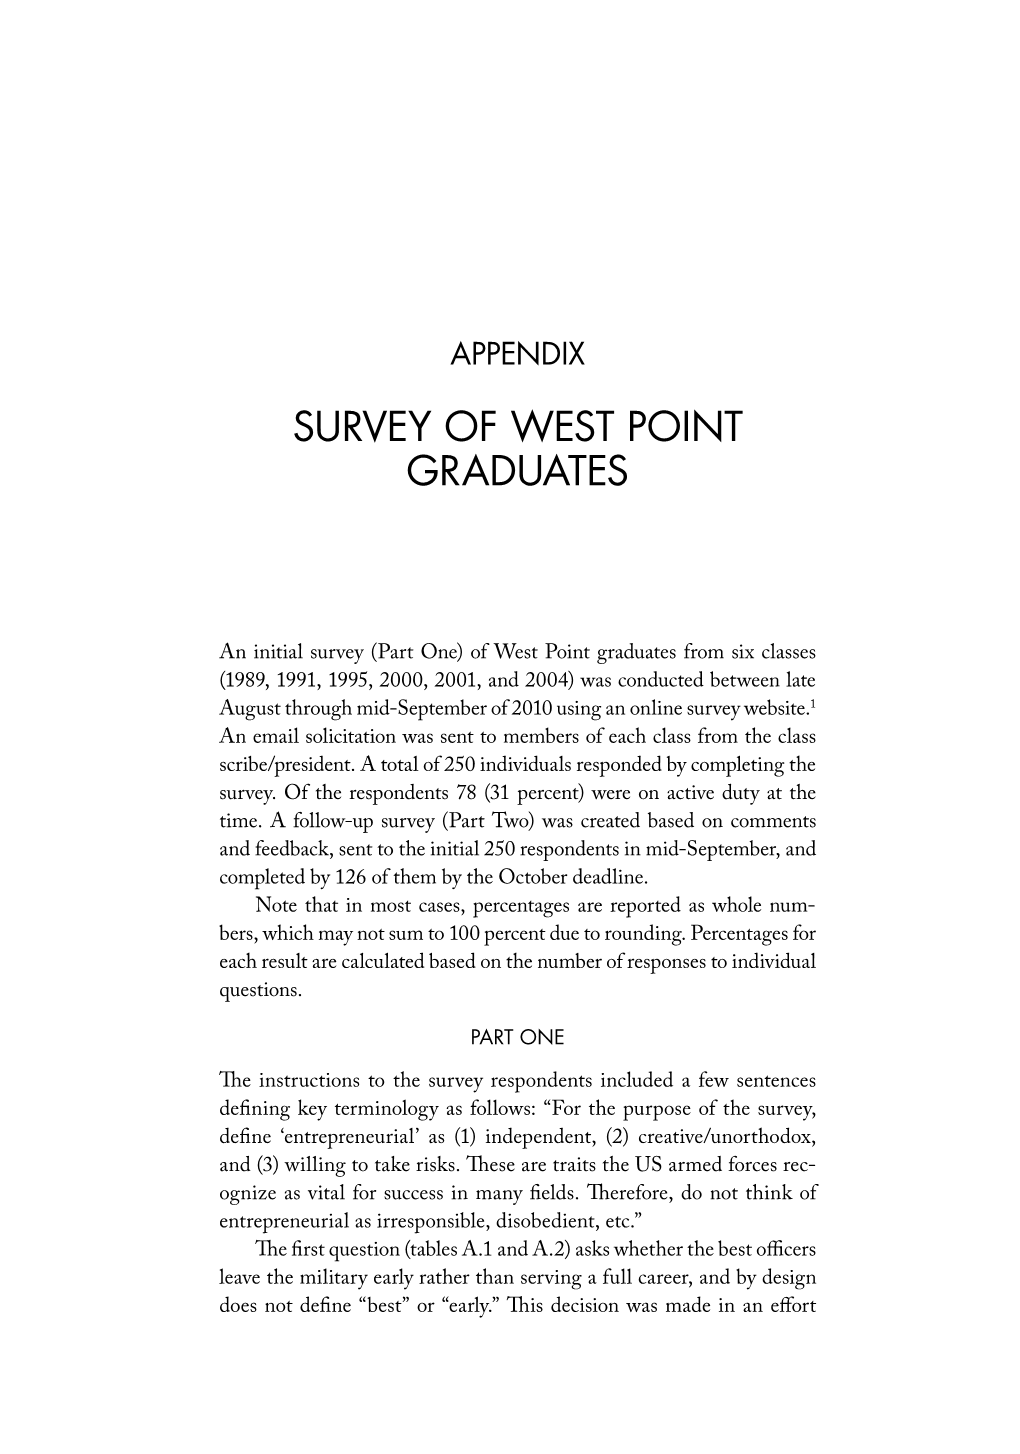 Survey of West Point Graduates